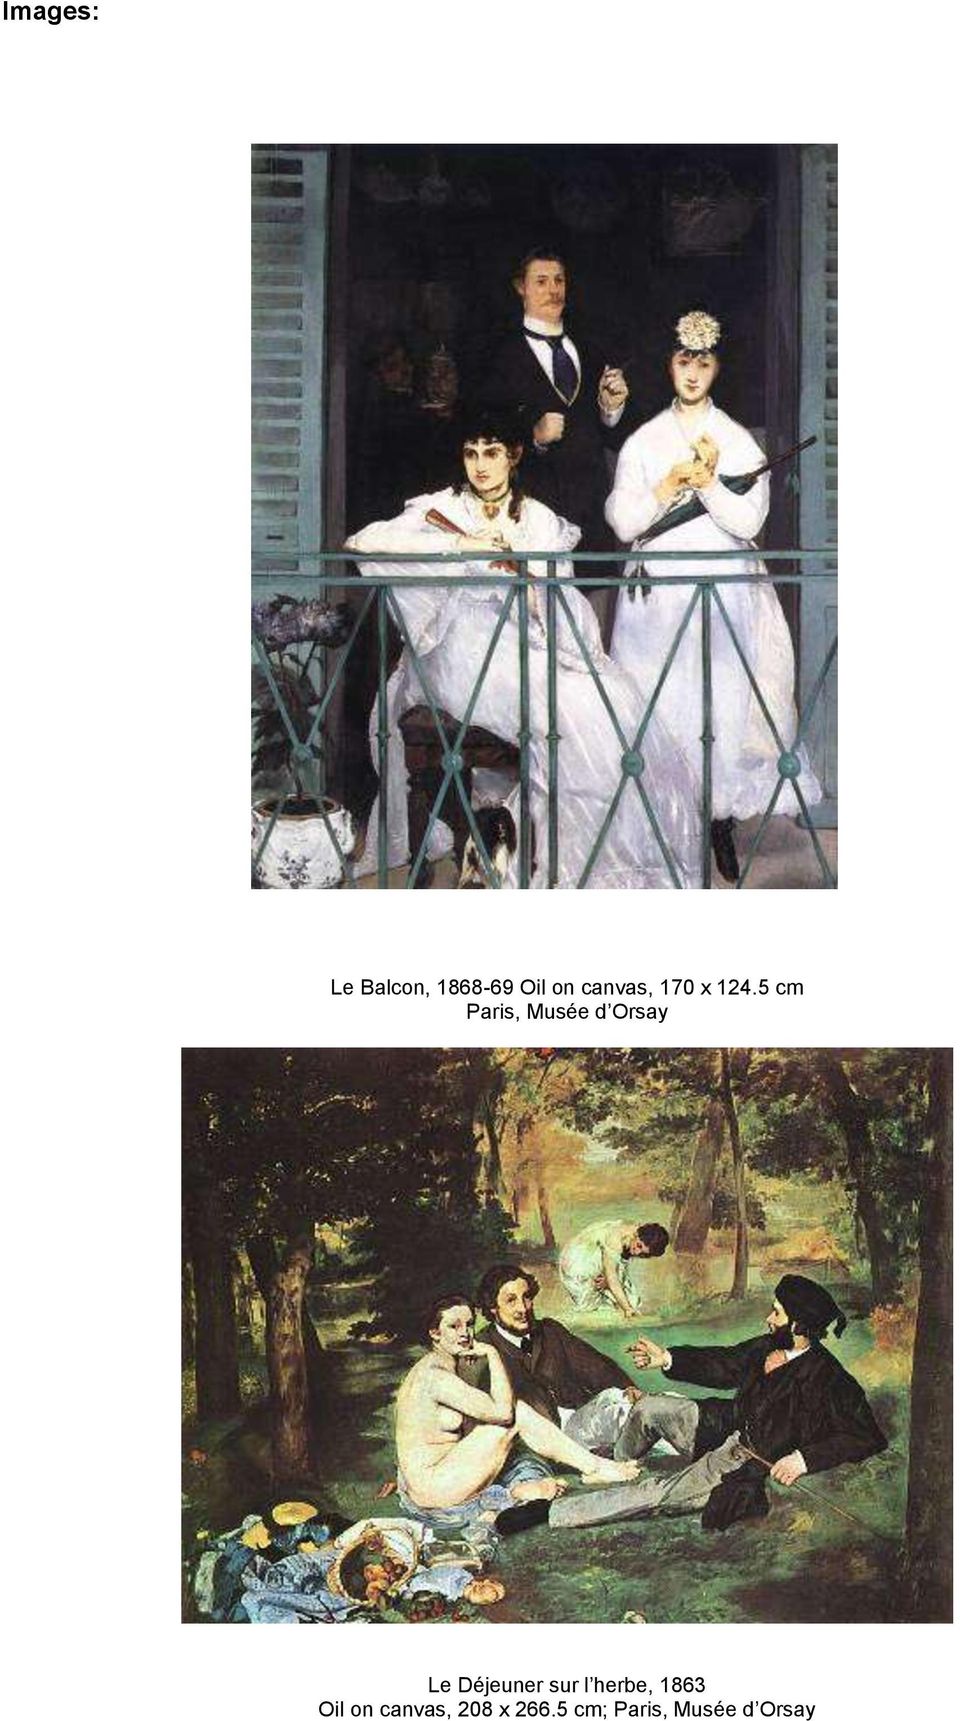 Le Balcon, 1868-69 Oil on canvas, 170 x 124.